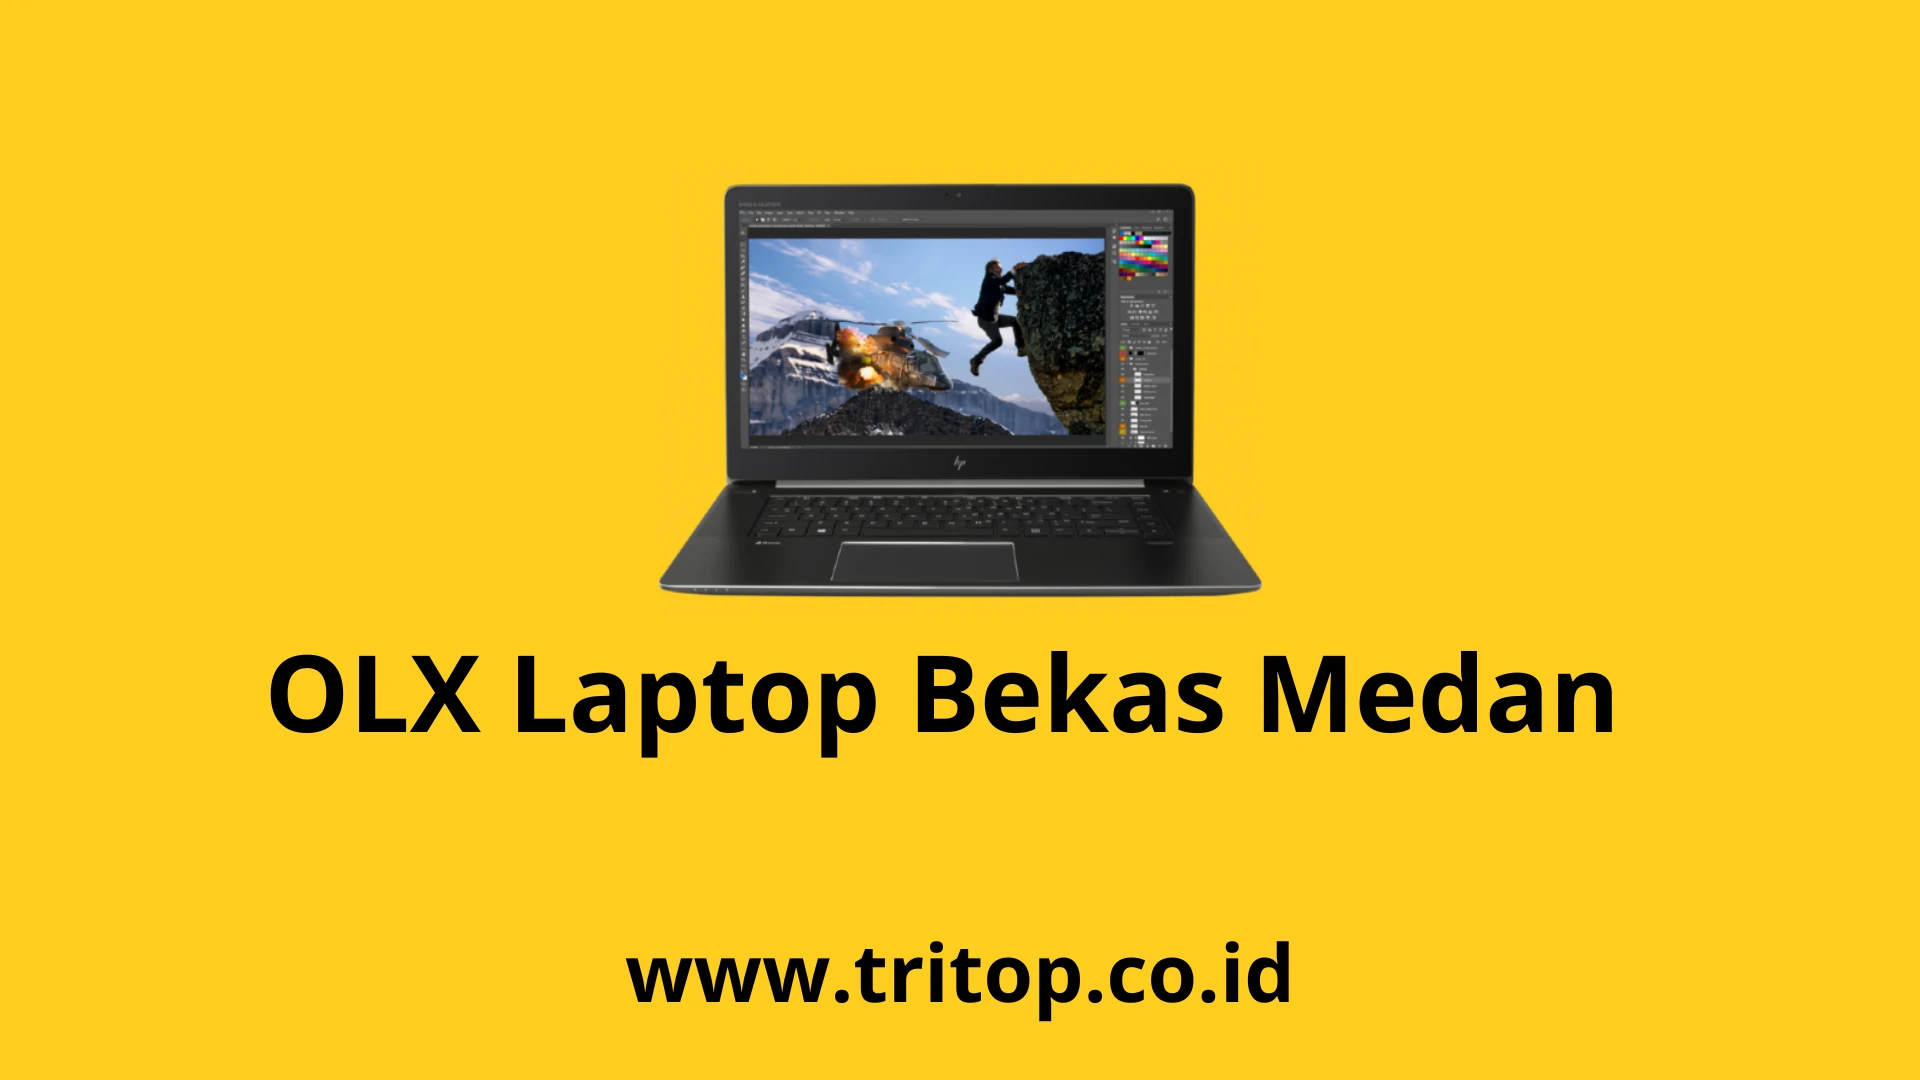 OLX Laptop Bekas Medan